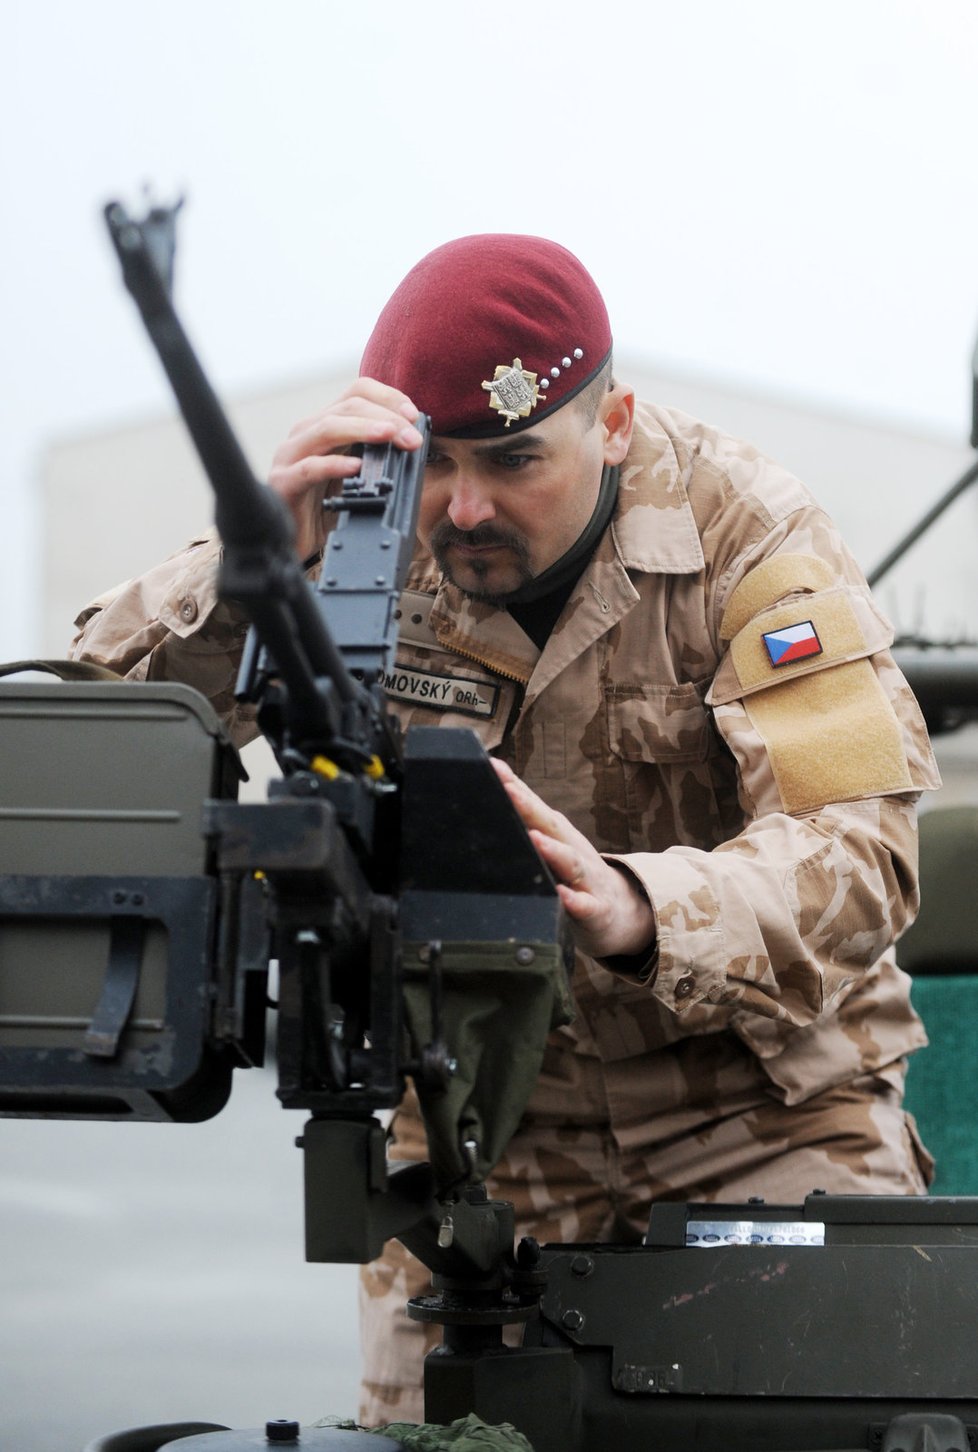 Získané informace poslouží nejen české armádě, ale i NATO a záchranářům